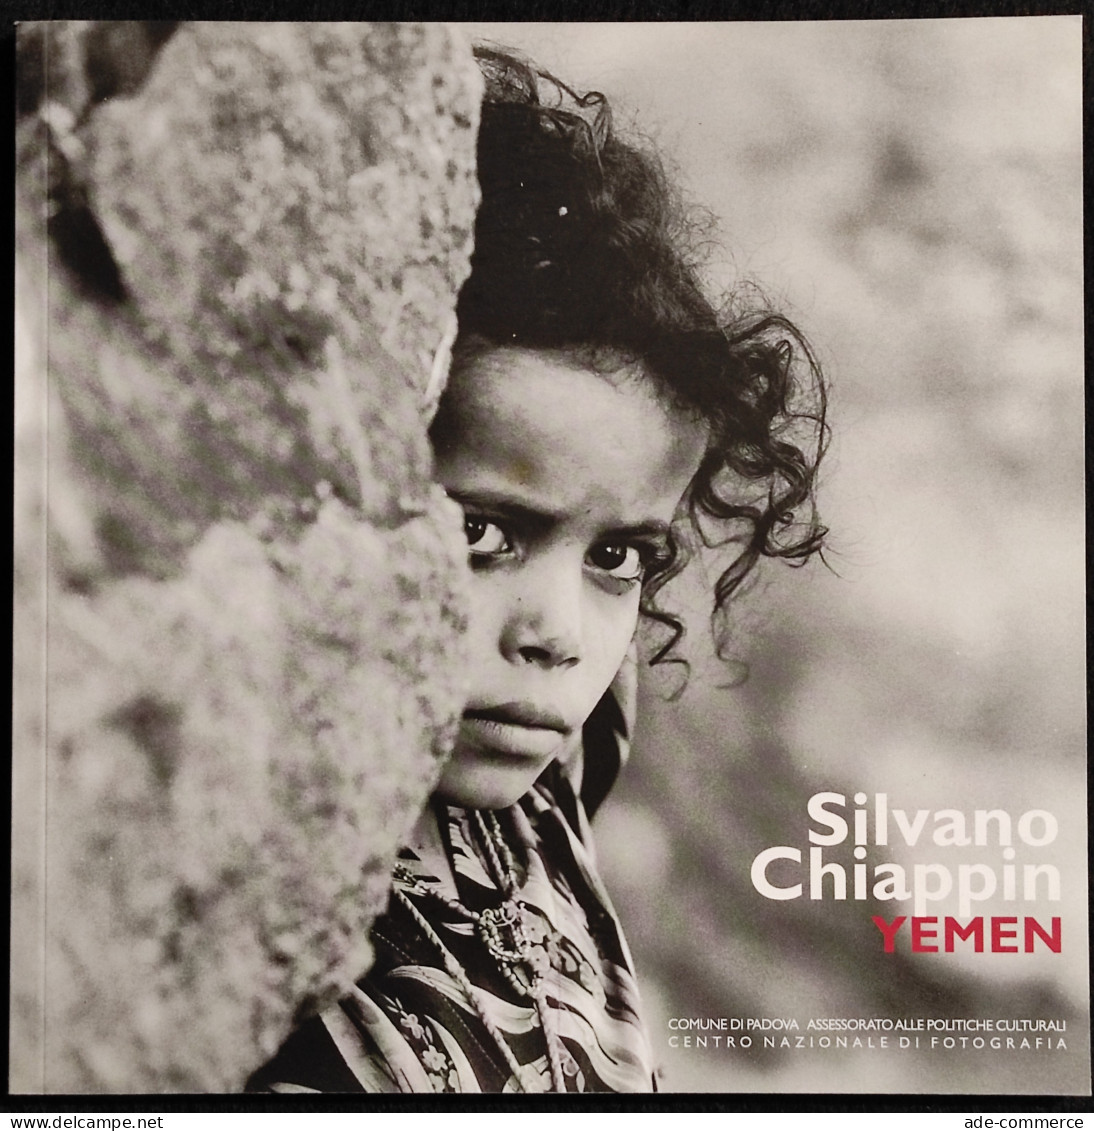 Silvano Chiappin - Yemen - E. Gusella - 2006 - Fotografia - Fotografie